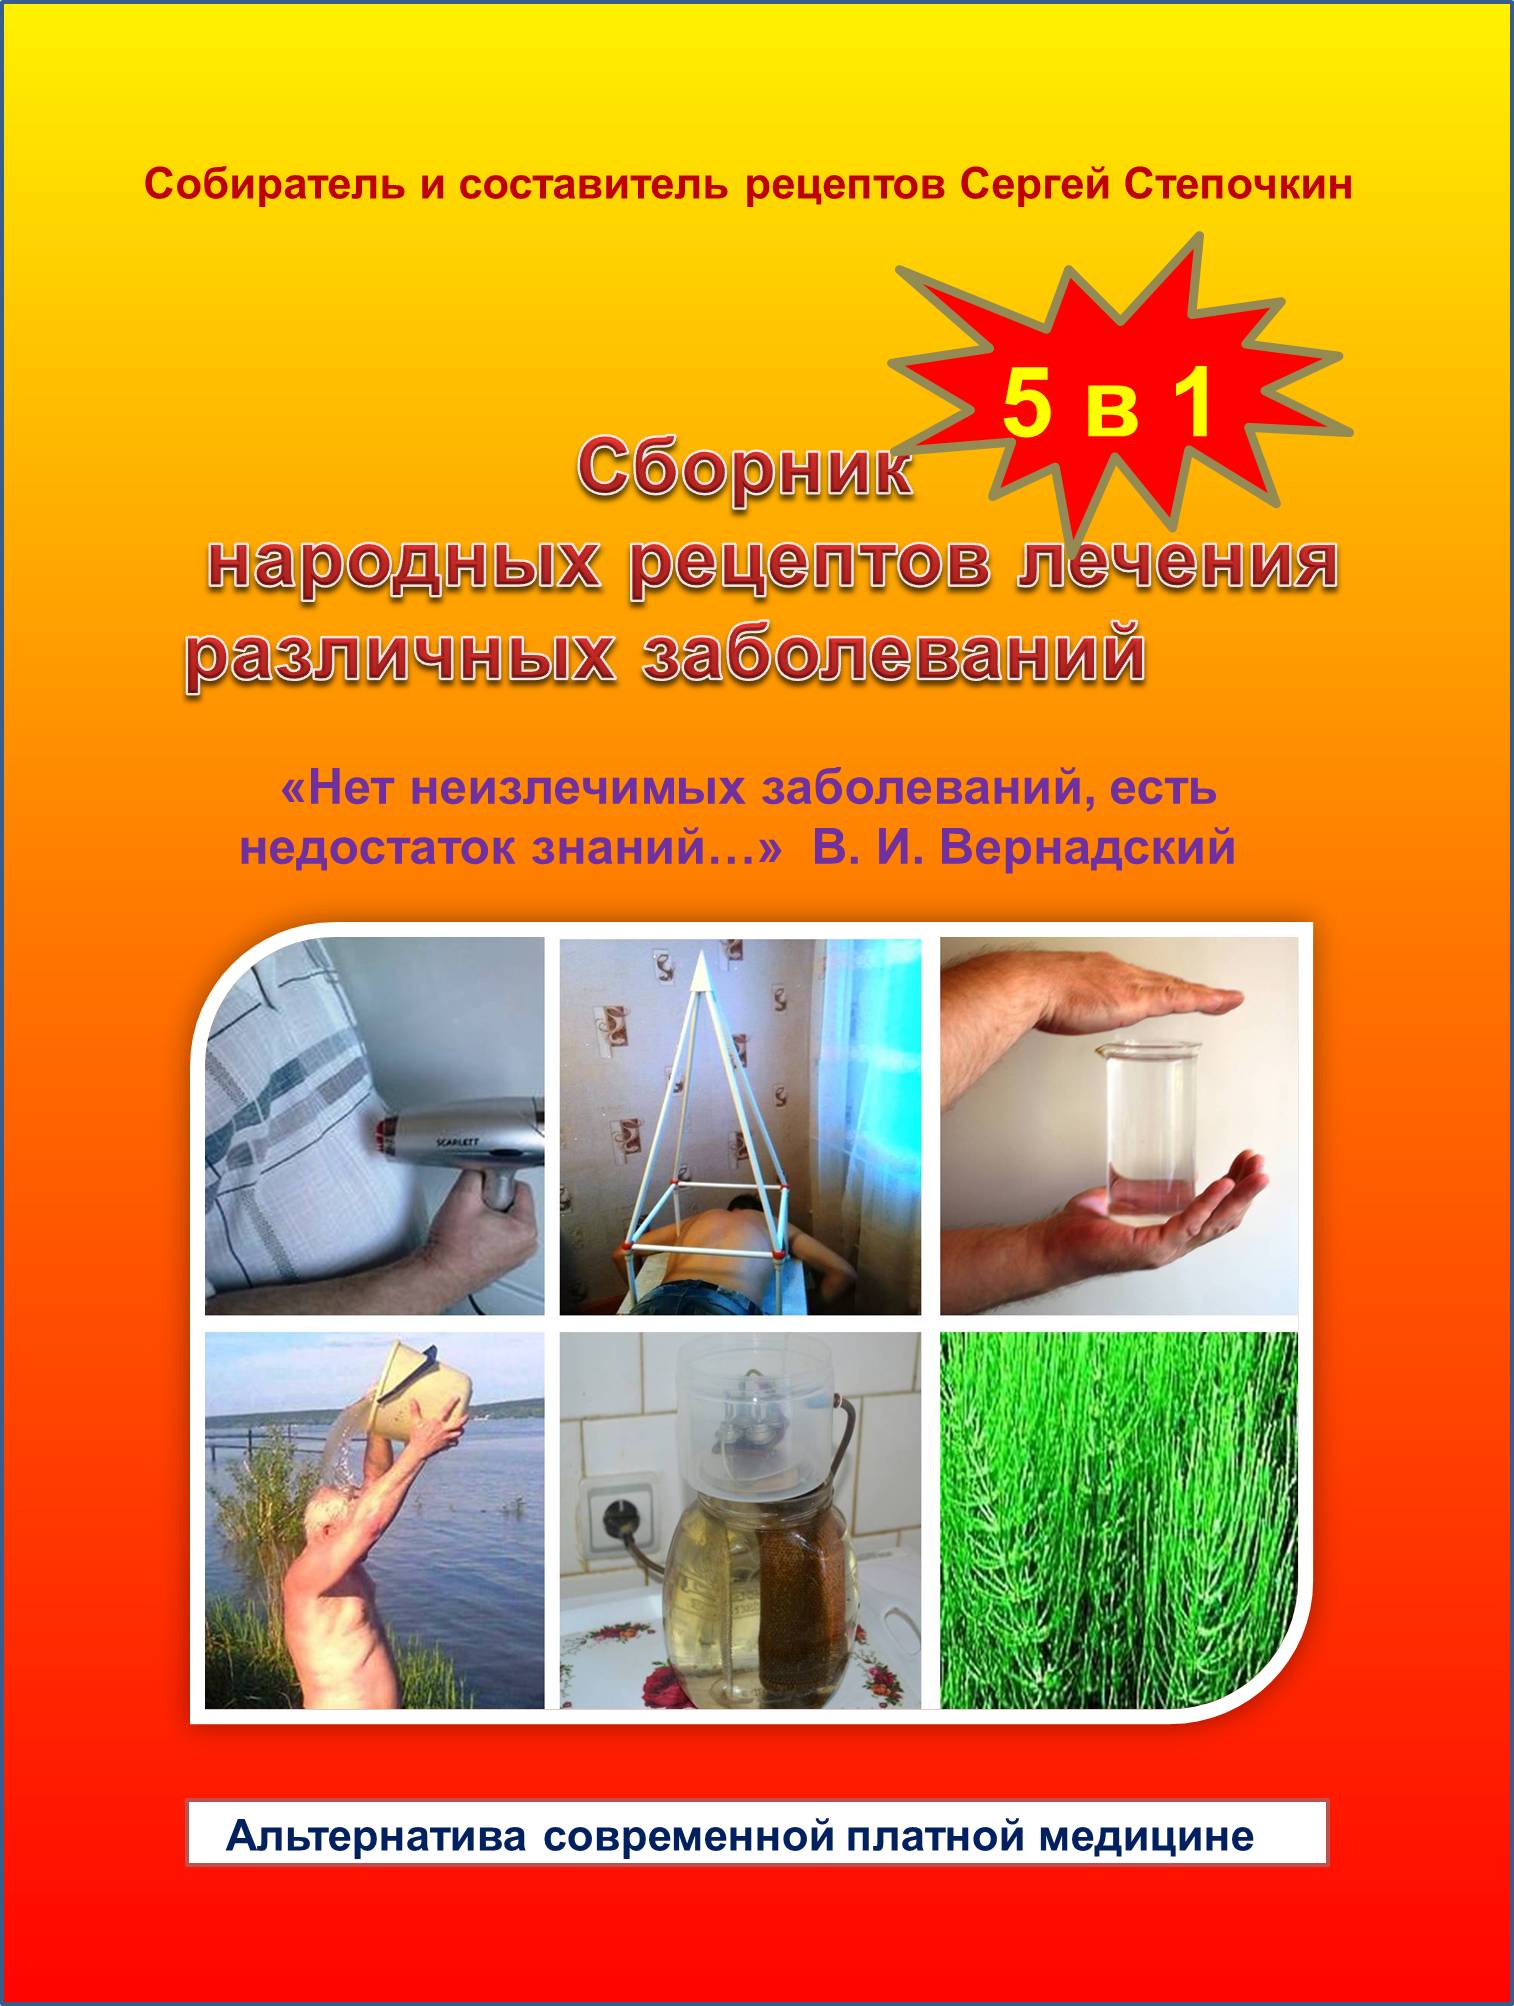 Сборник народных рецептов лечения различных заболеваний 5 в 1 | Сергей Степочкин